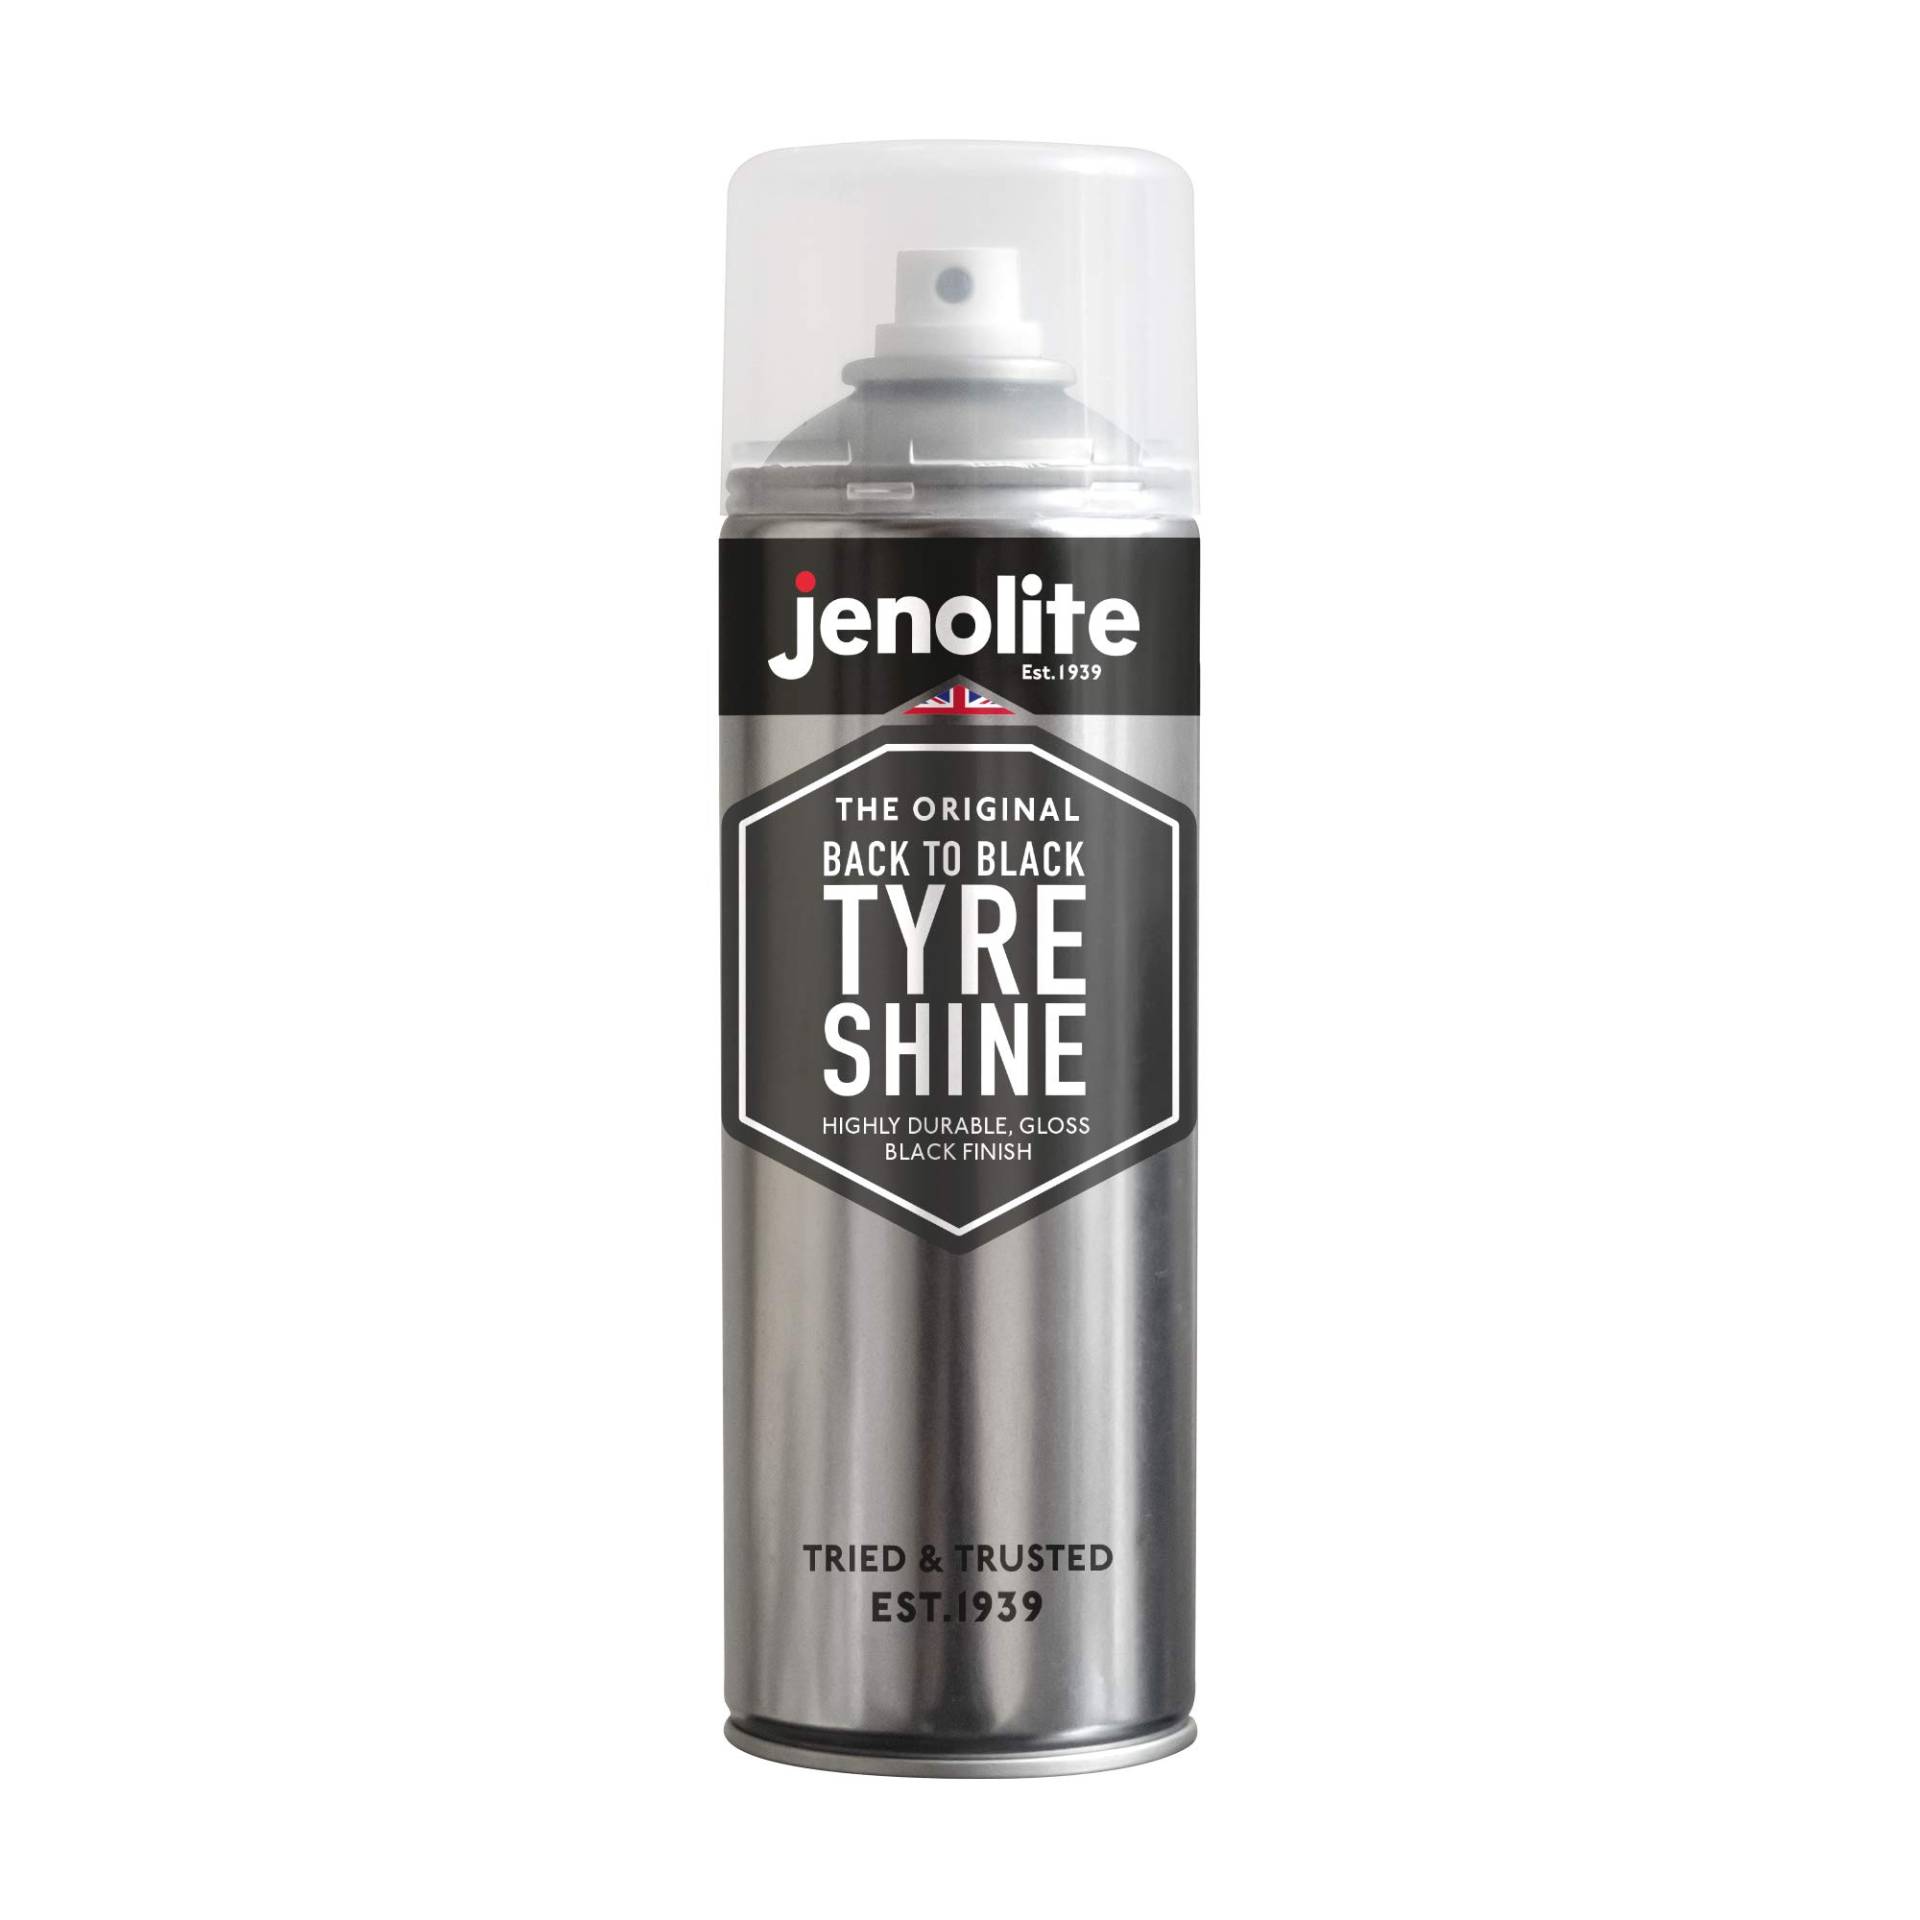 JENOLITE Zurück zu Schwarz Reifenglanzspray | Stellt Reifen Wieder her und schützt sie | Sofortiges Reifendressing | Langanhaltender Wet-Look-Glanz | 500 ml von JENOLITE